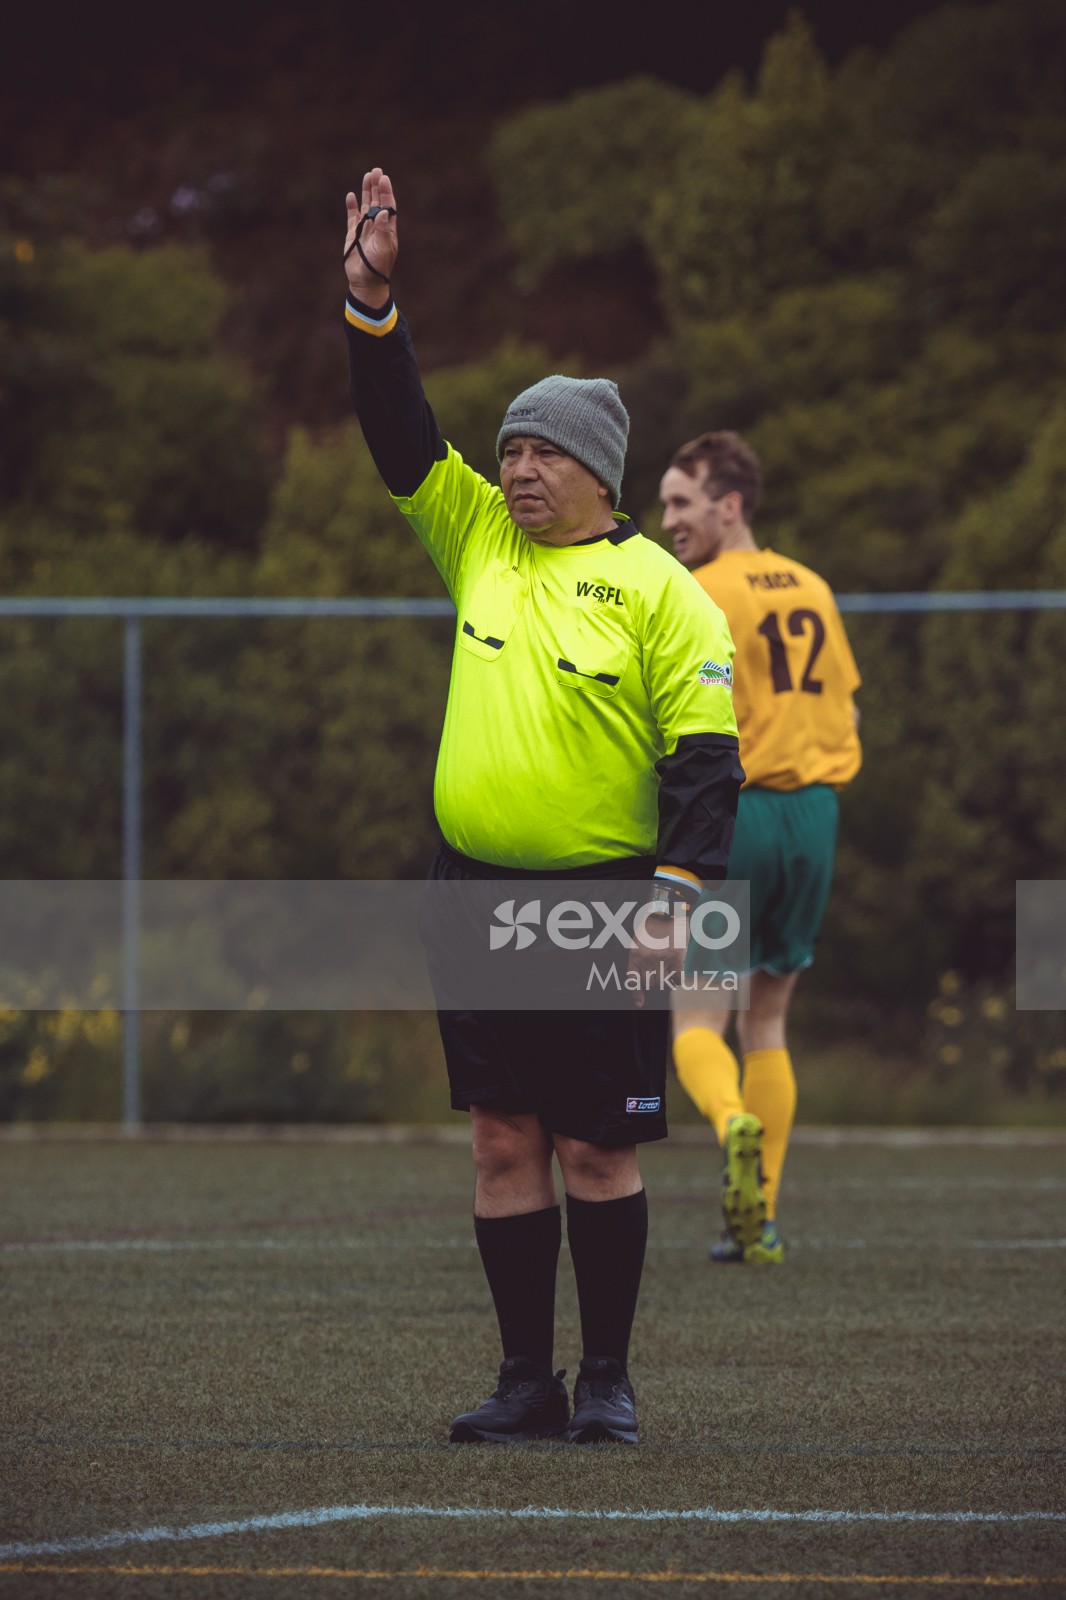 Referee awarding free kick - Sports Zone sunday league